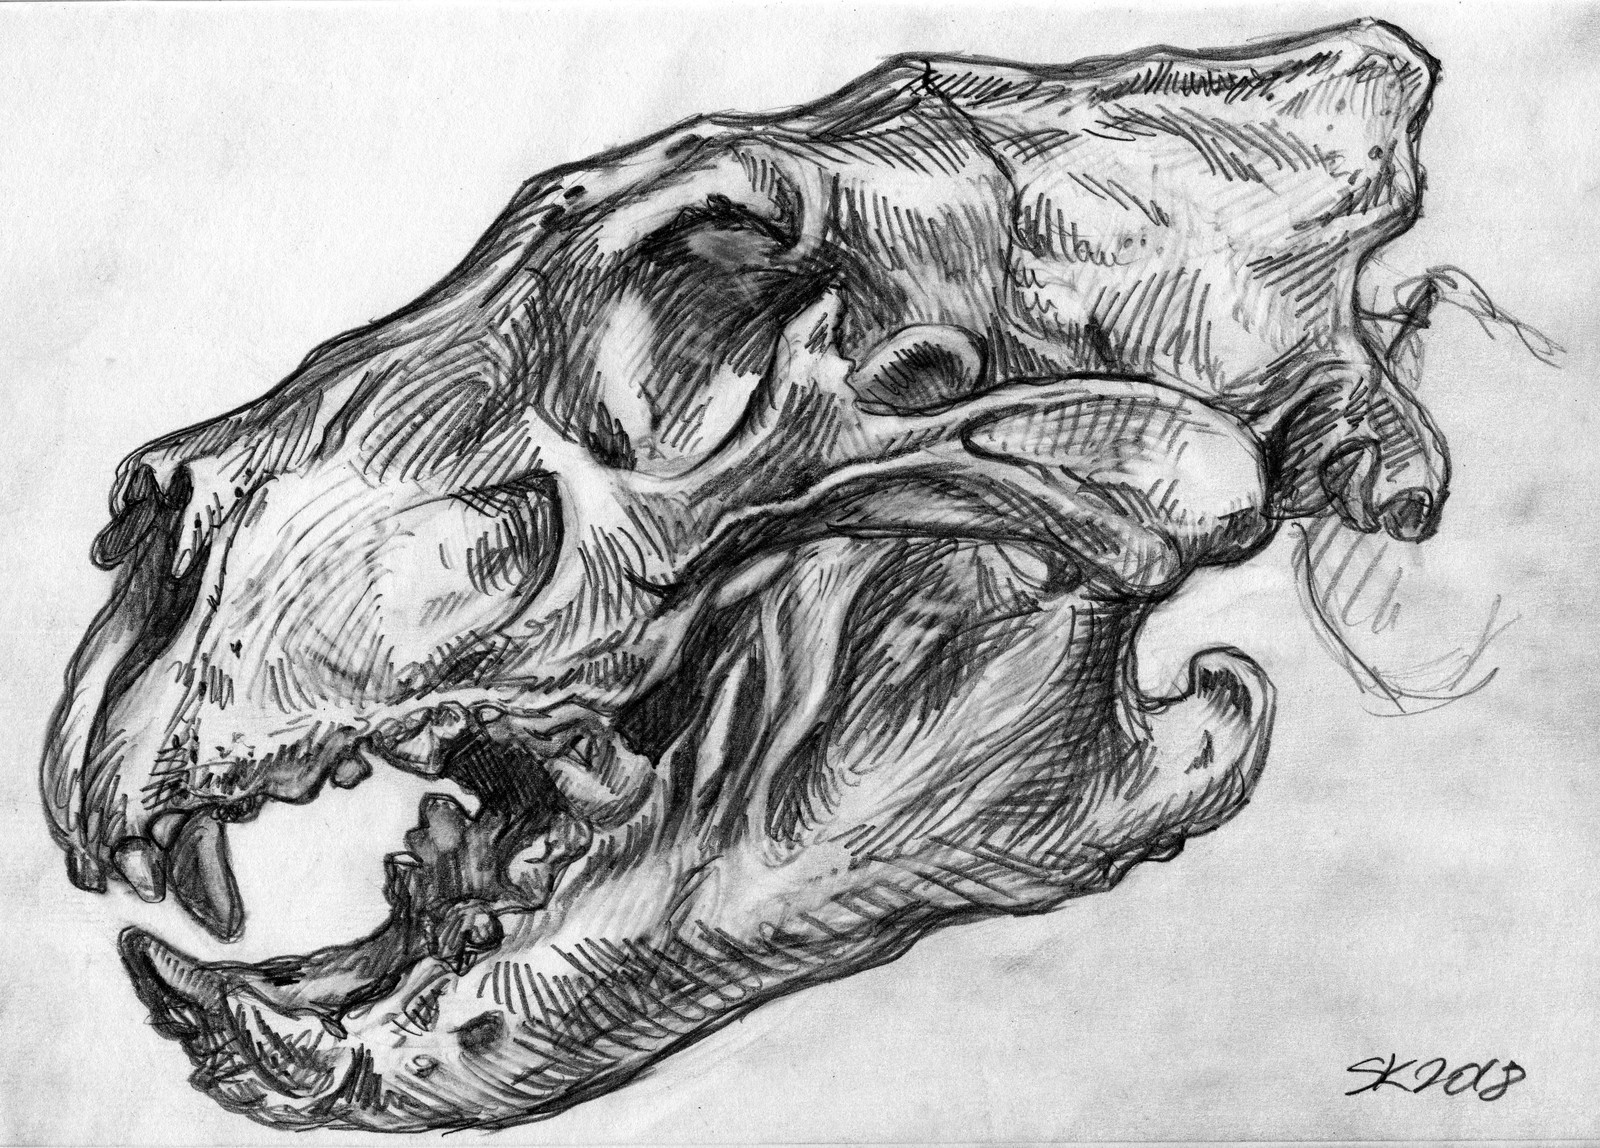 Lion skull and skeleton studies